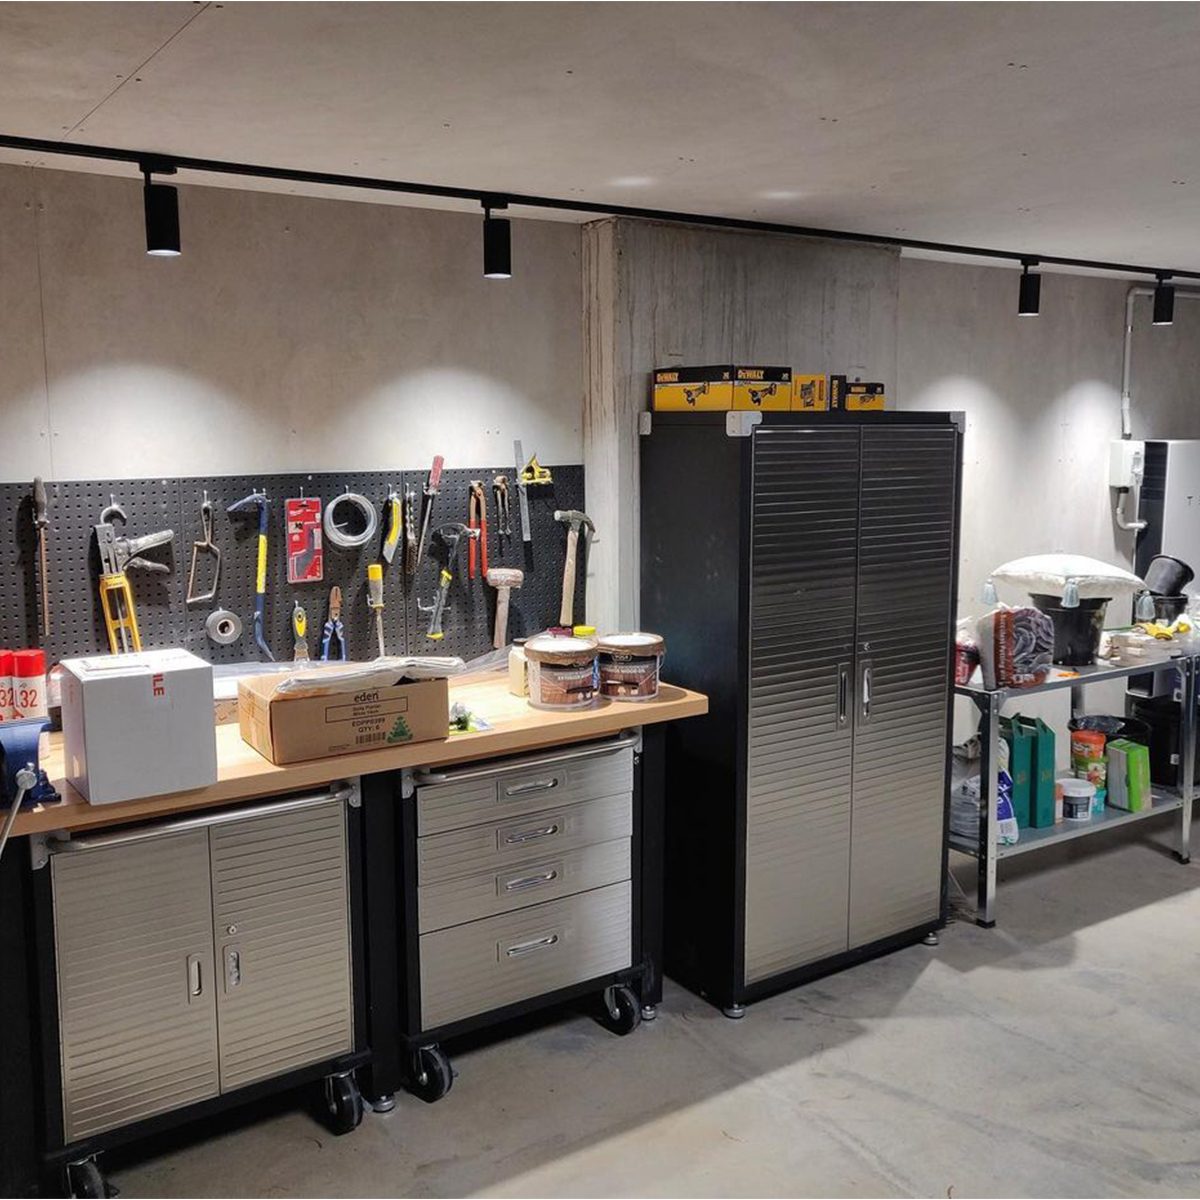 Garage Lighting Ideas: How to Light up a Garage? – LedsMaster LED